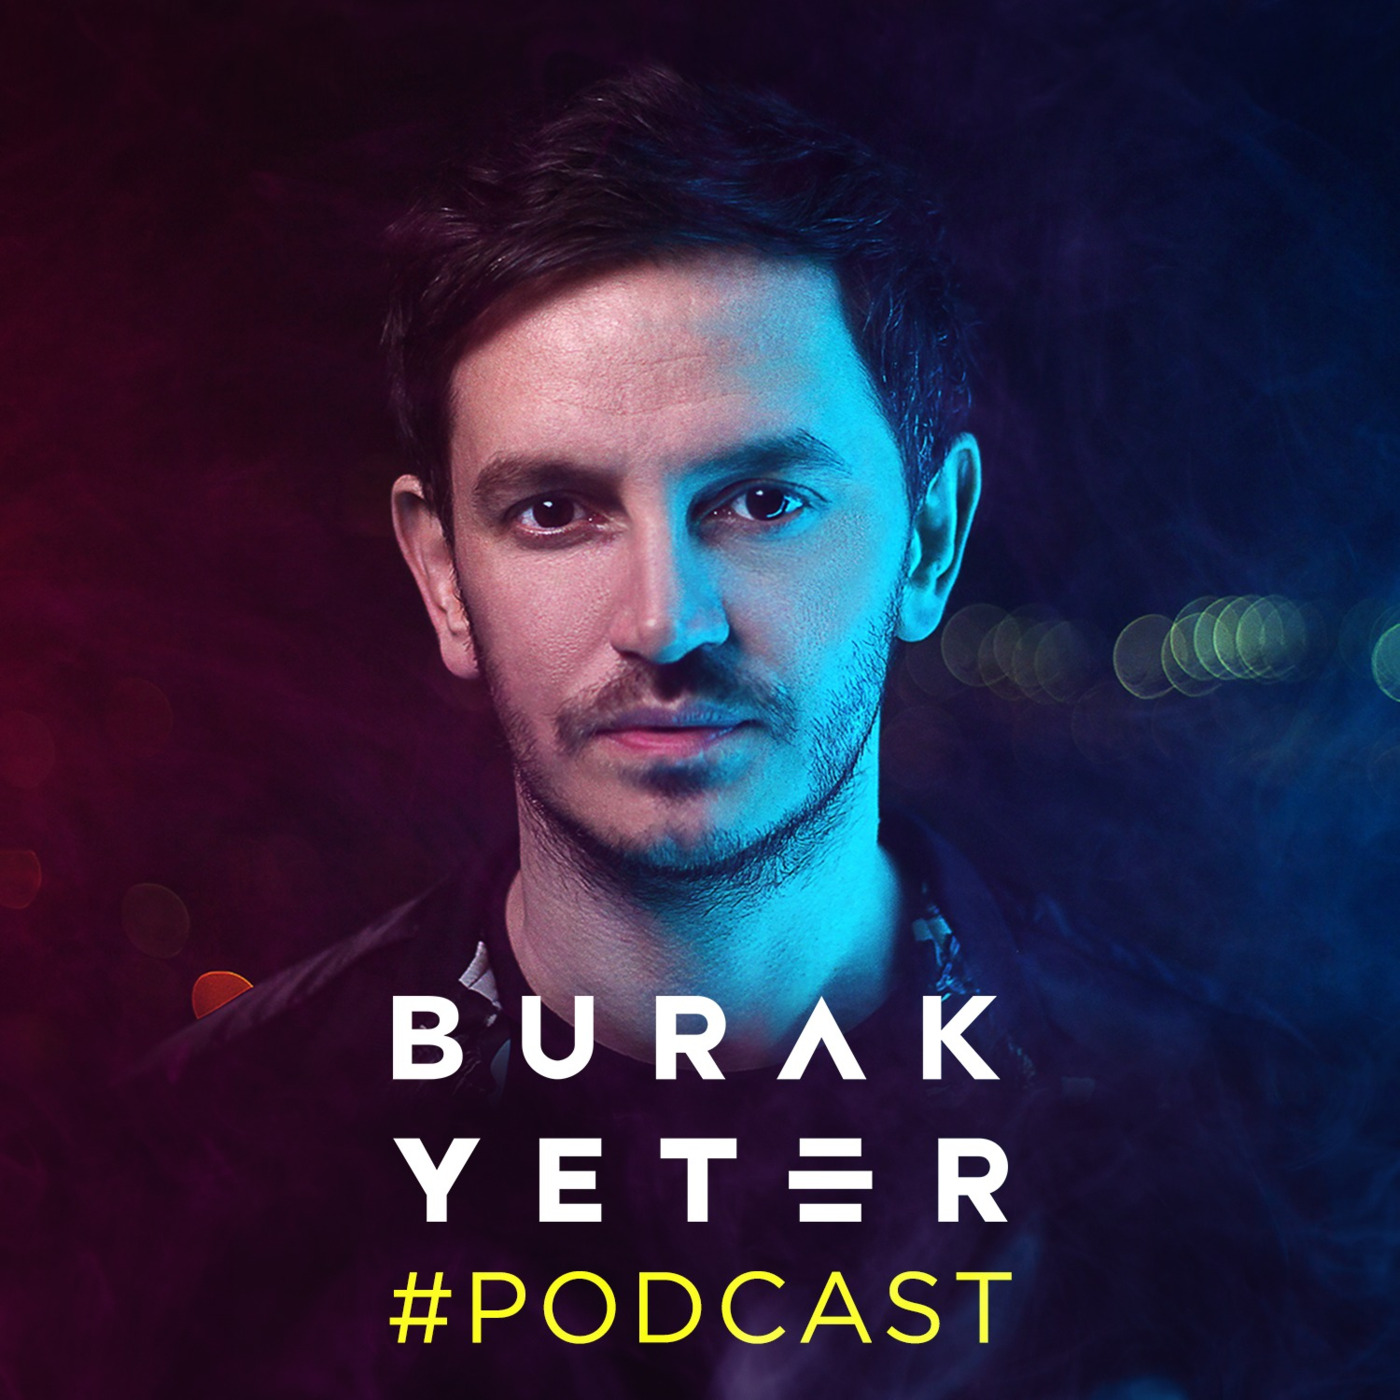 Burak Yeter's Podcast